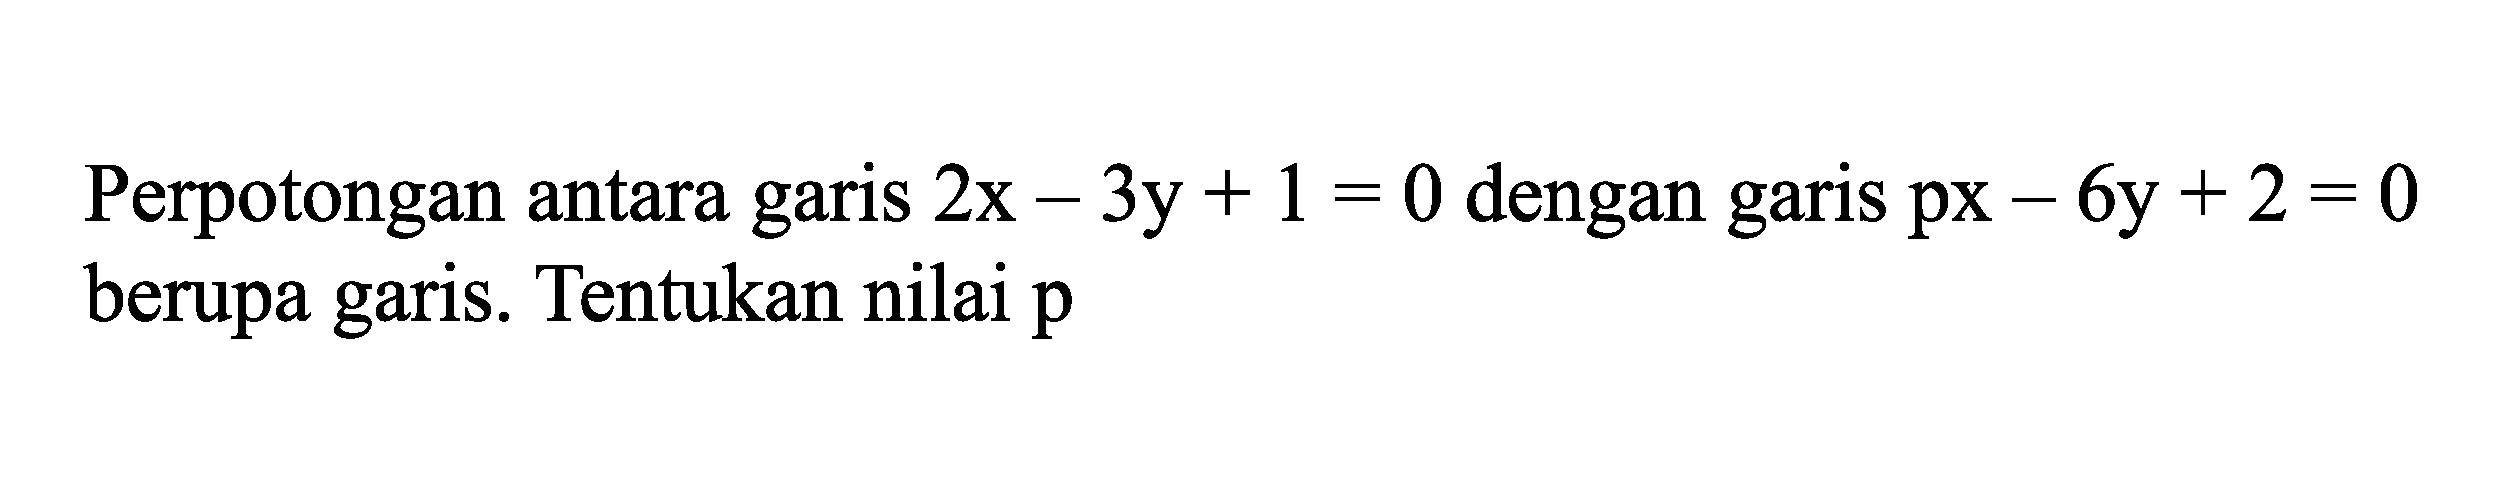 Perpotongan antara garis 2x - 3y + 1 = 0 dengan garis px - 6y + 2 = 0 berupa garis. Tentukan nilai p